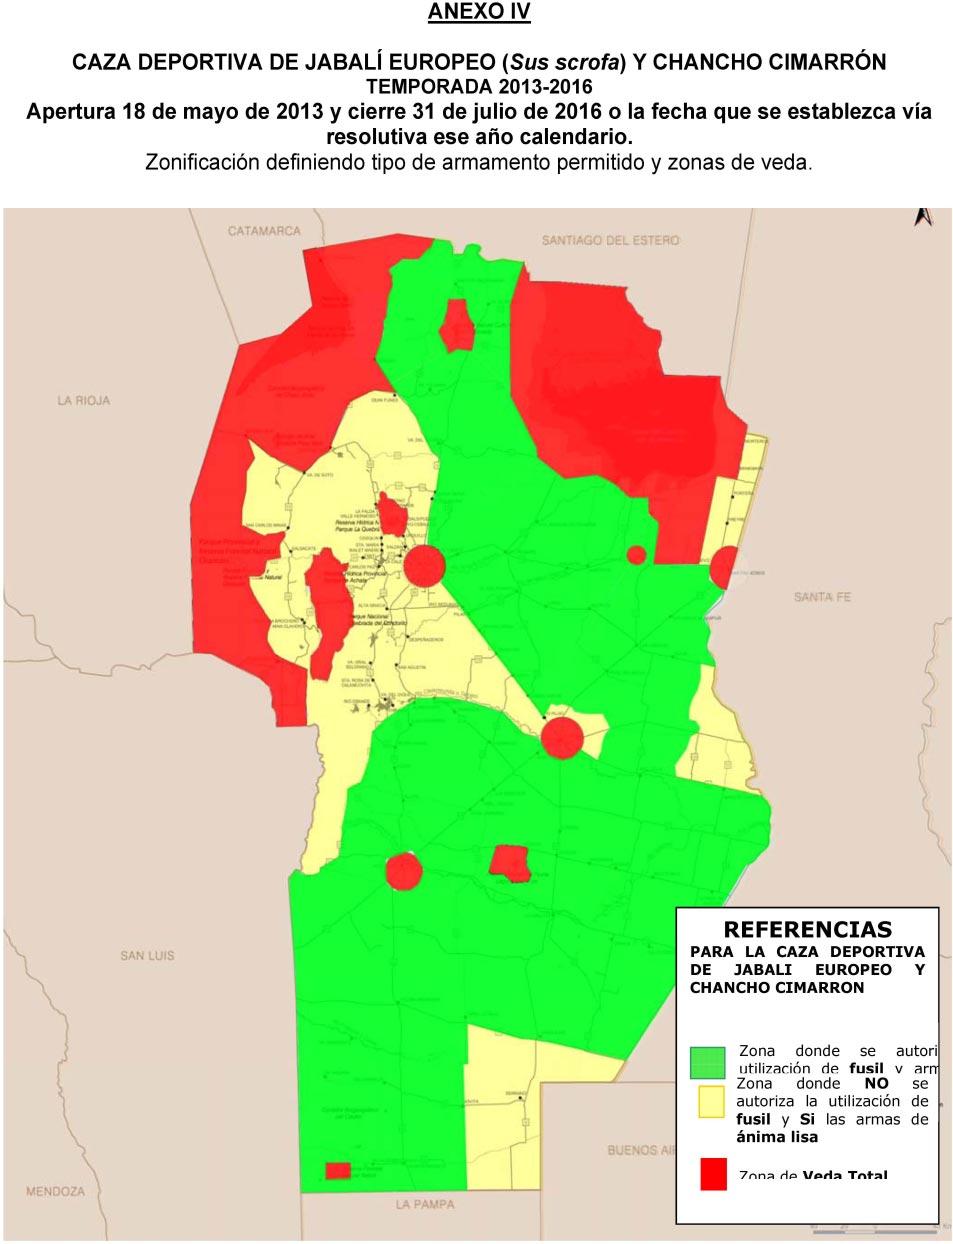 ZONA DE VEDA TOTAL (indicada en color rojo en el mapa) se delimita de la siguiente forma: a. Departamento Capital.